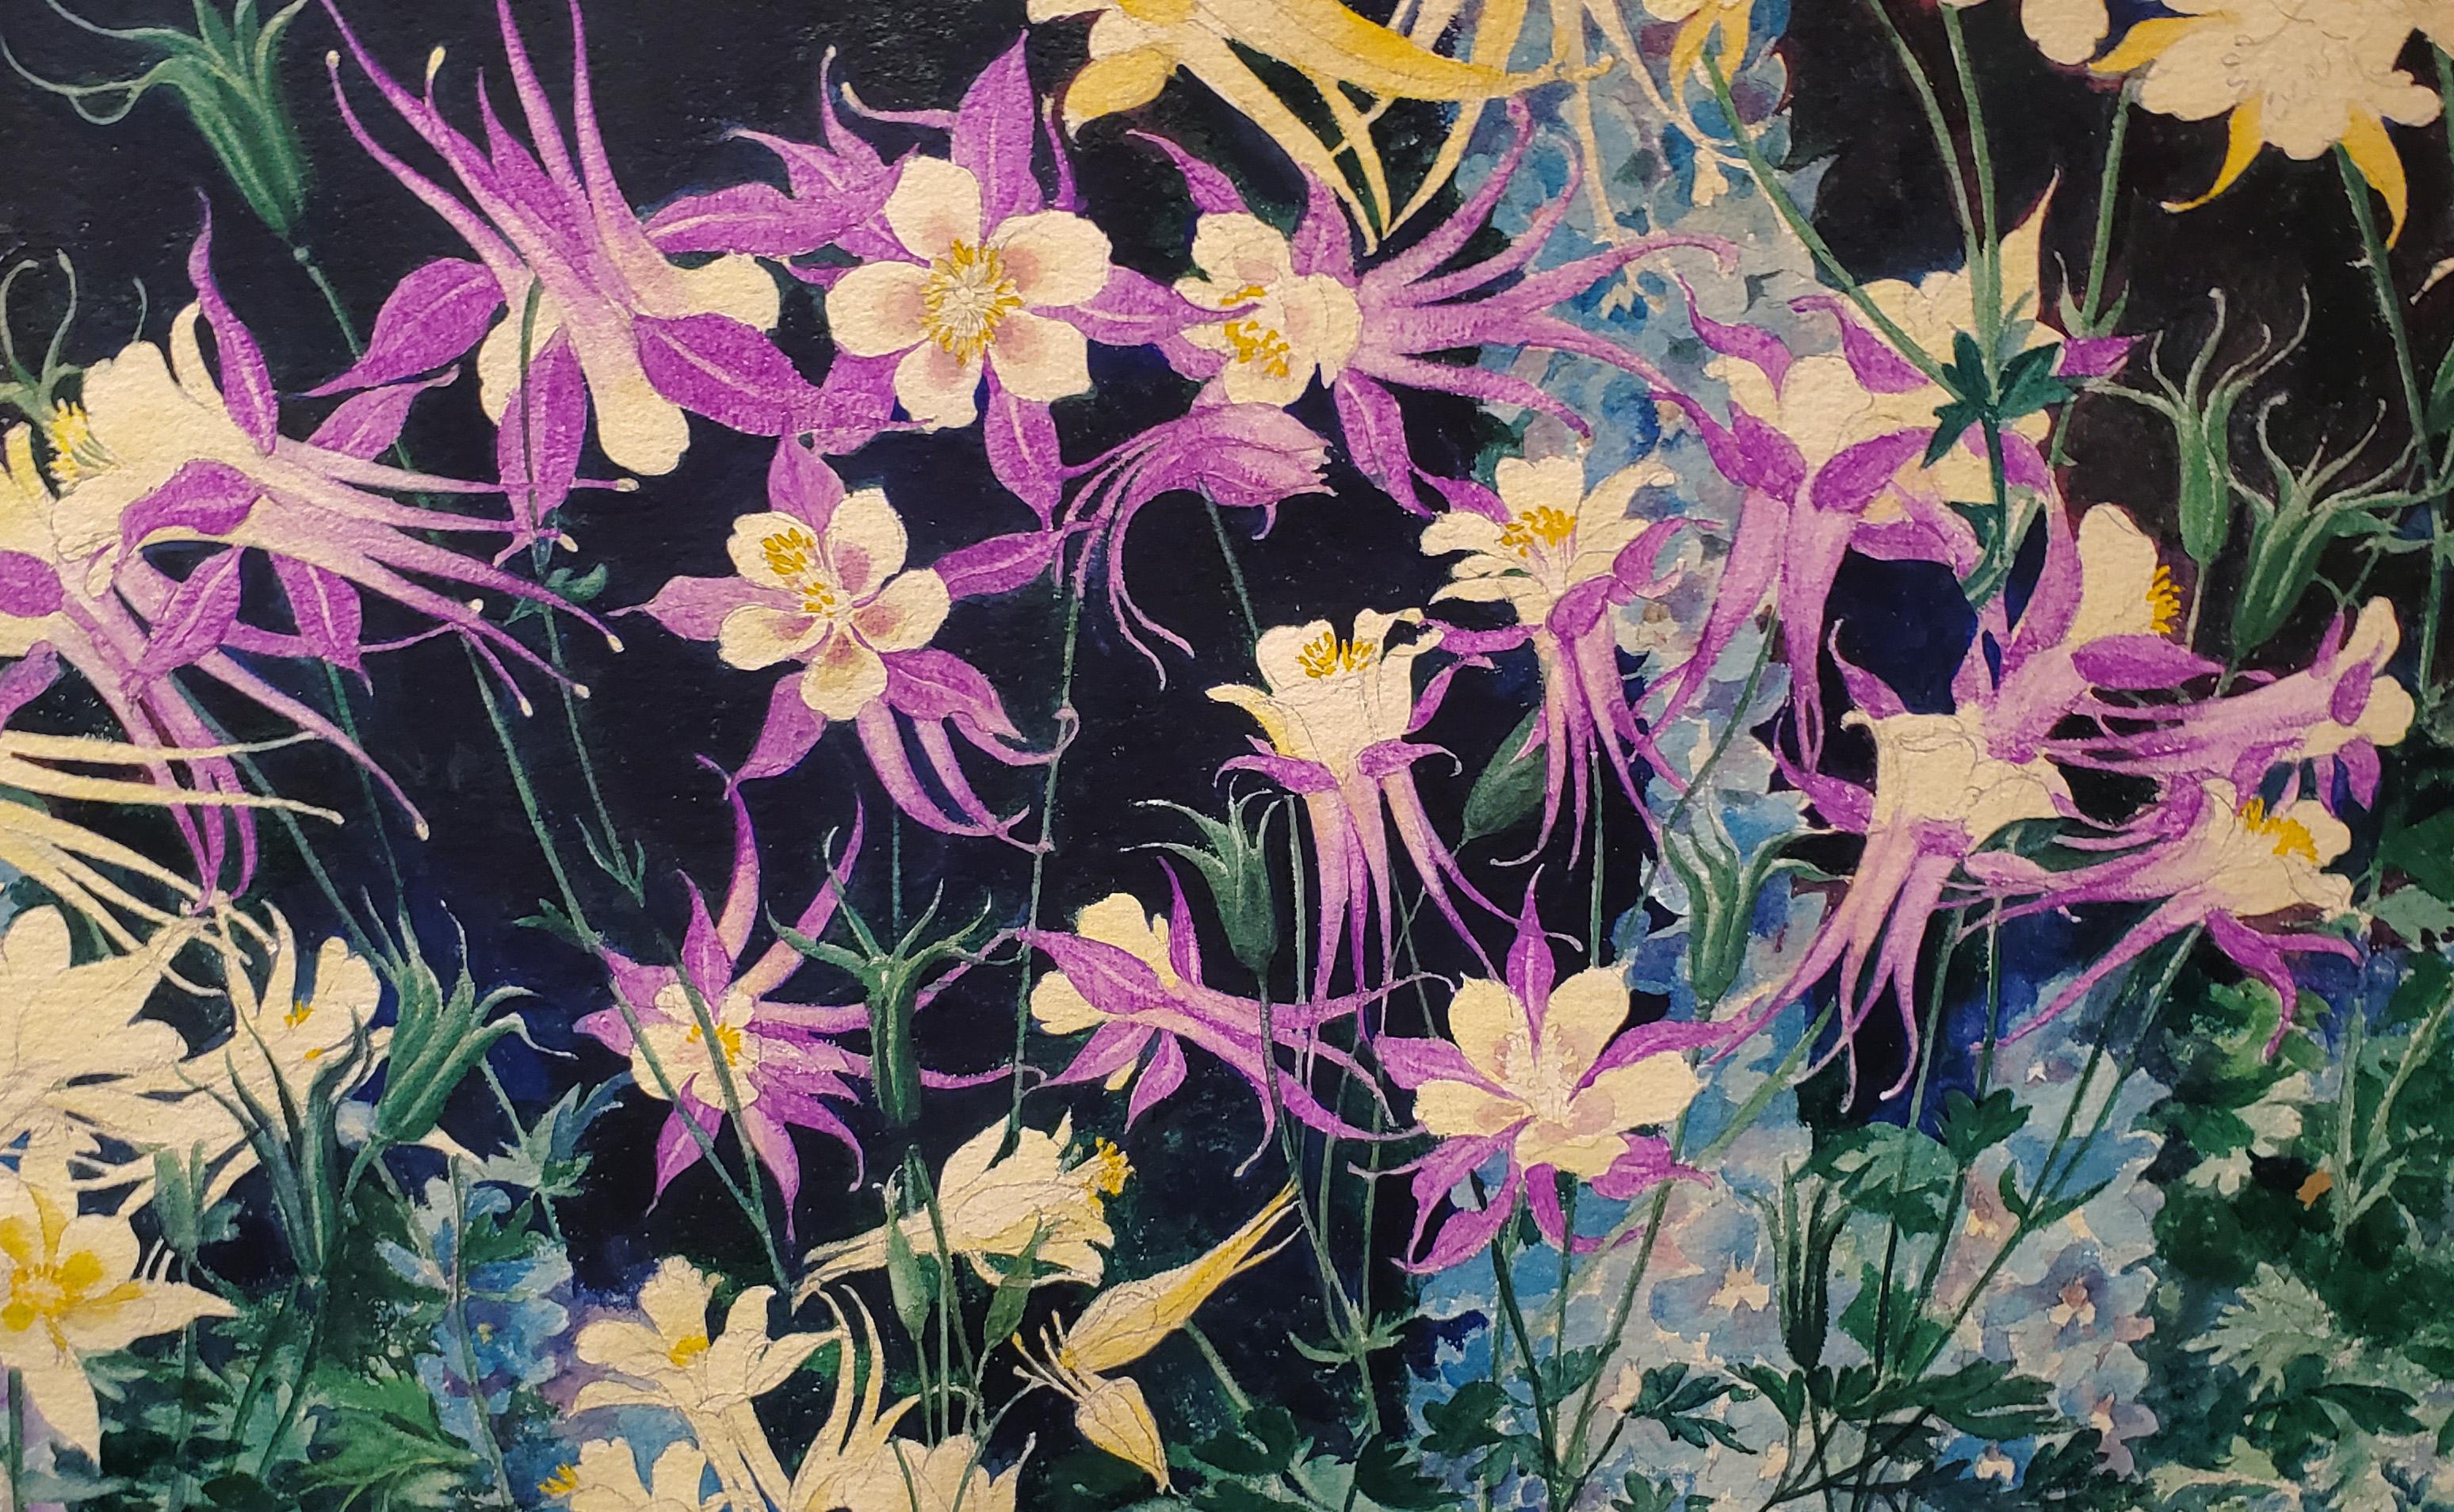 Blumen: Aquilegia und Delphinium – amerikanisches impressionistisches Aquarell auf Papier (Amerikanischer Impressionismus), Art, von John Rutherford Boyd